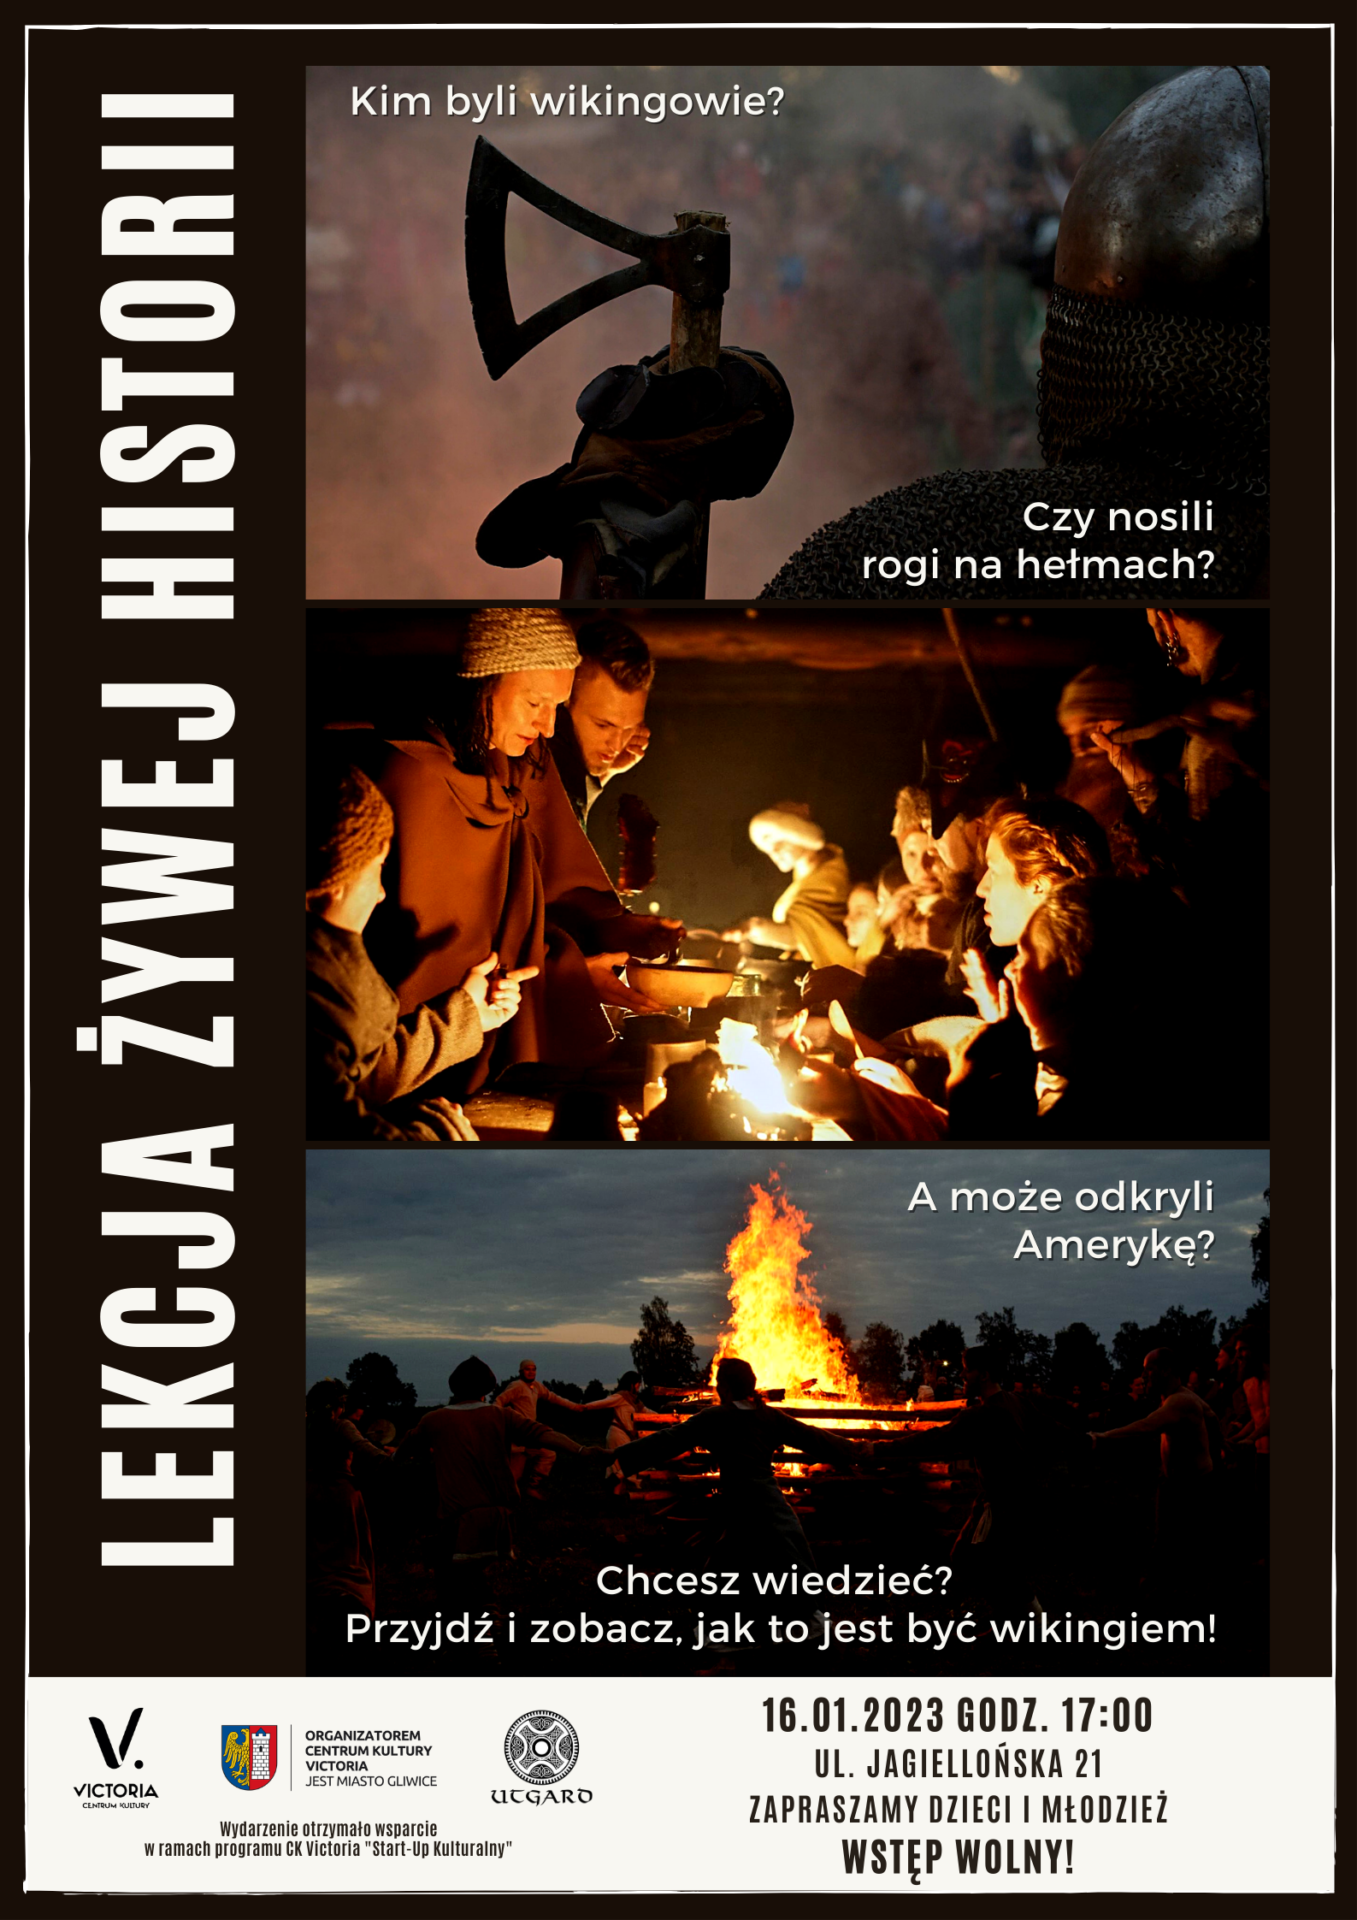 Lekcja żywej historii. Na plakacie trzy zdjęcia przedstawiające inscenizacje z udziałem wikingów.